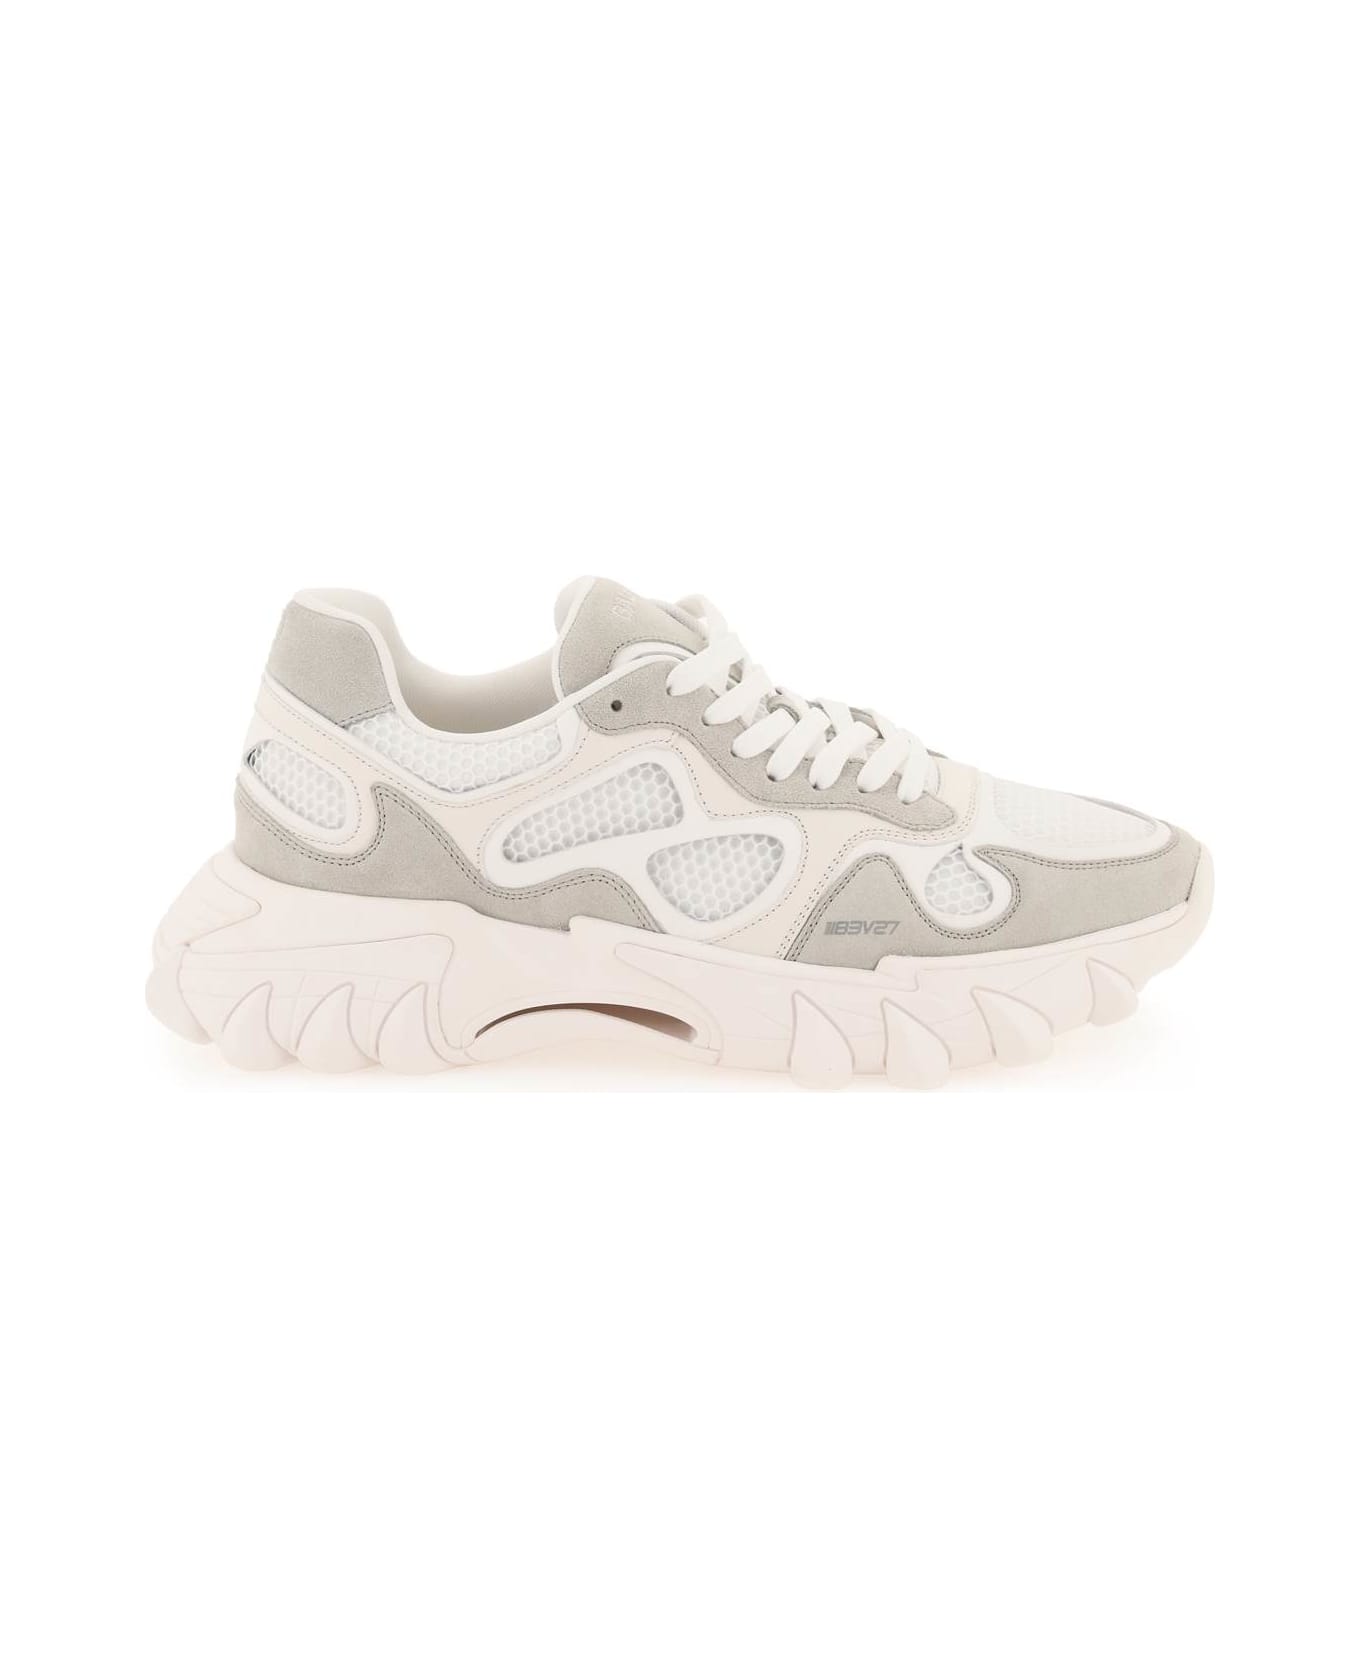 Balmain B-east Sneakers - WHITE